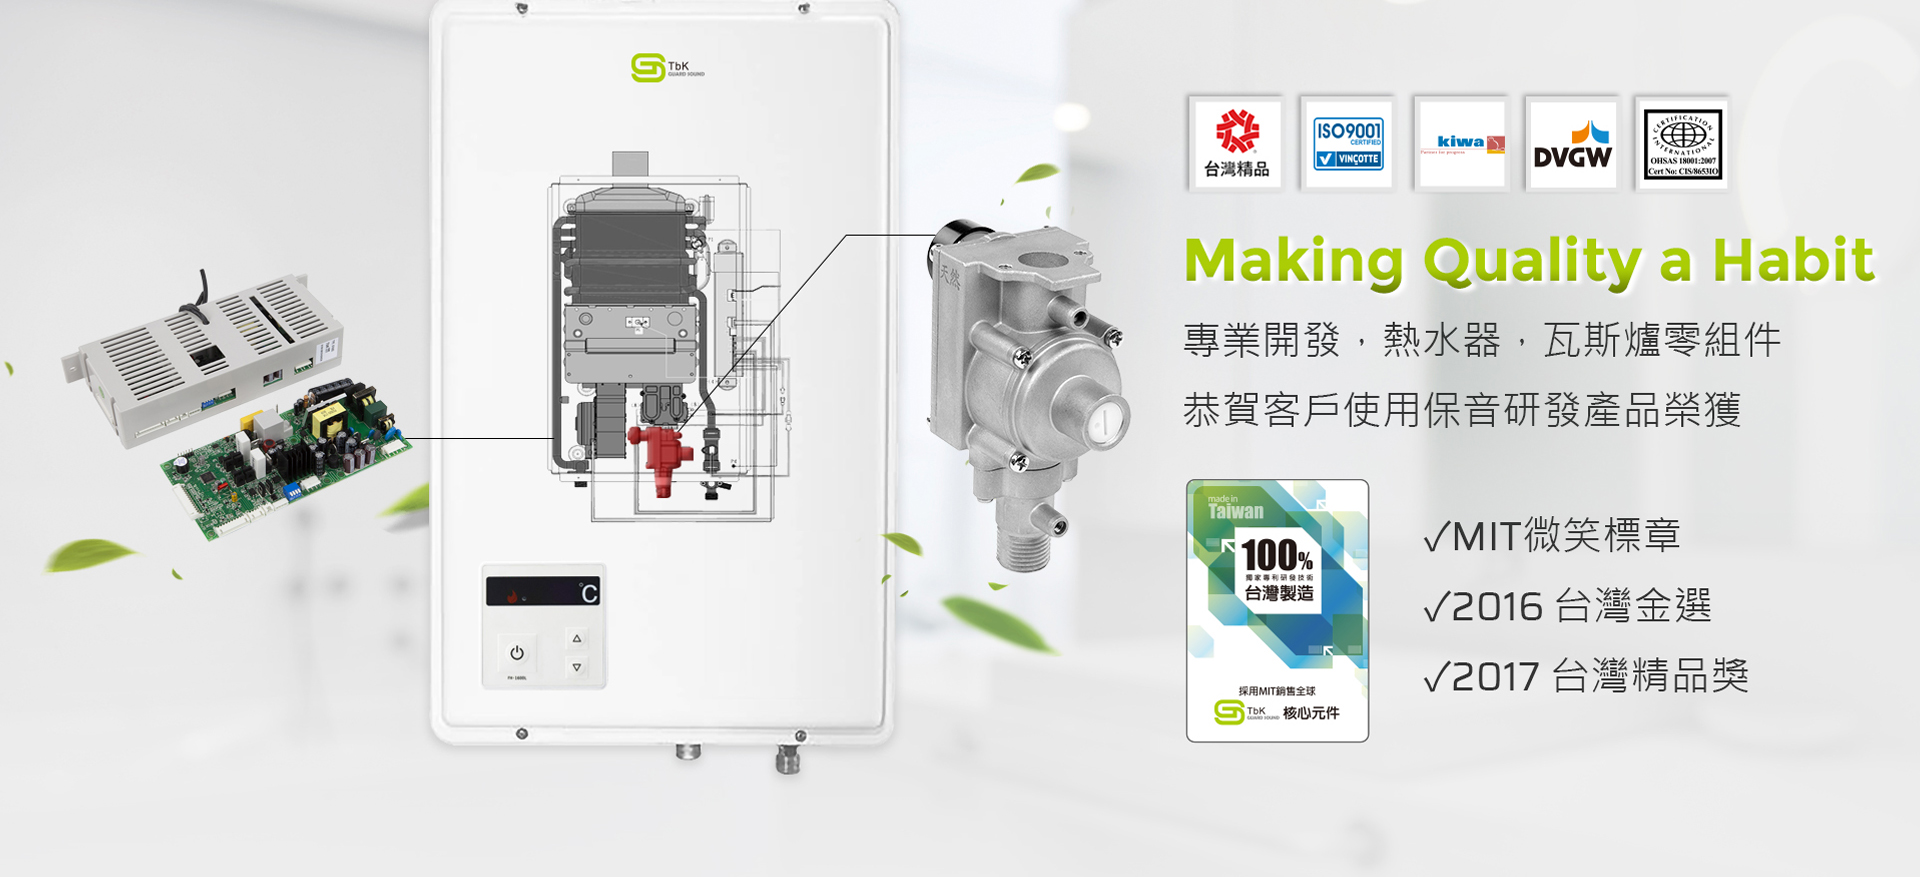 100%台灣製造熱水器、瓦斯爐零組件